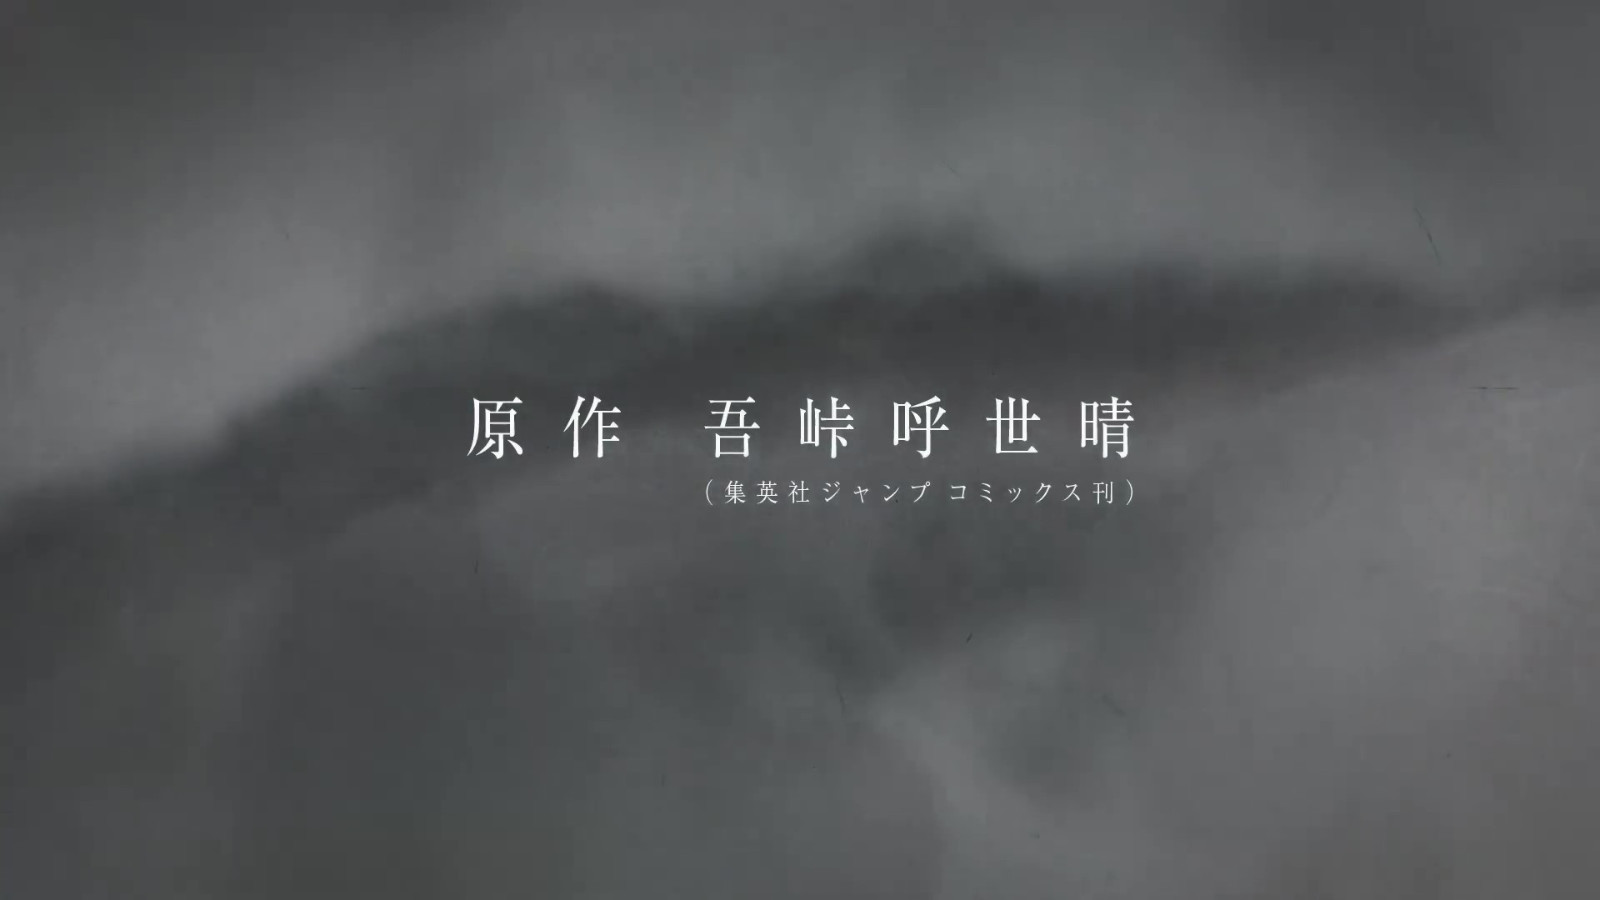 《鬼灭之刃》第3季「锻刀村篇」 第1弹PV支布